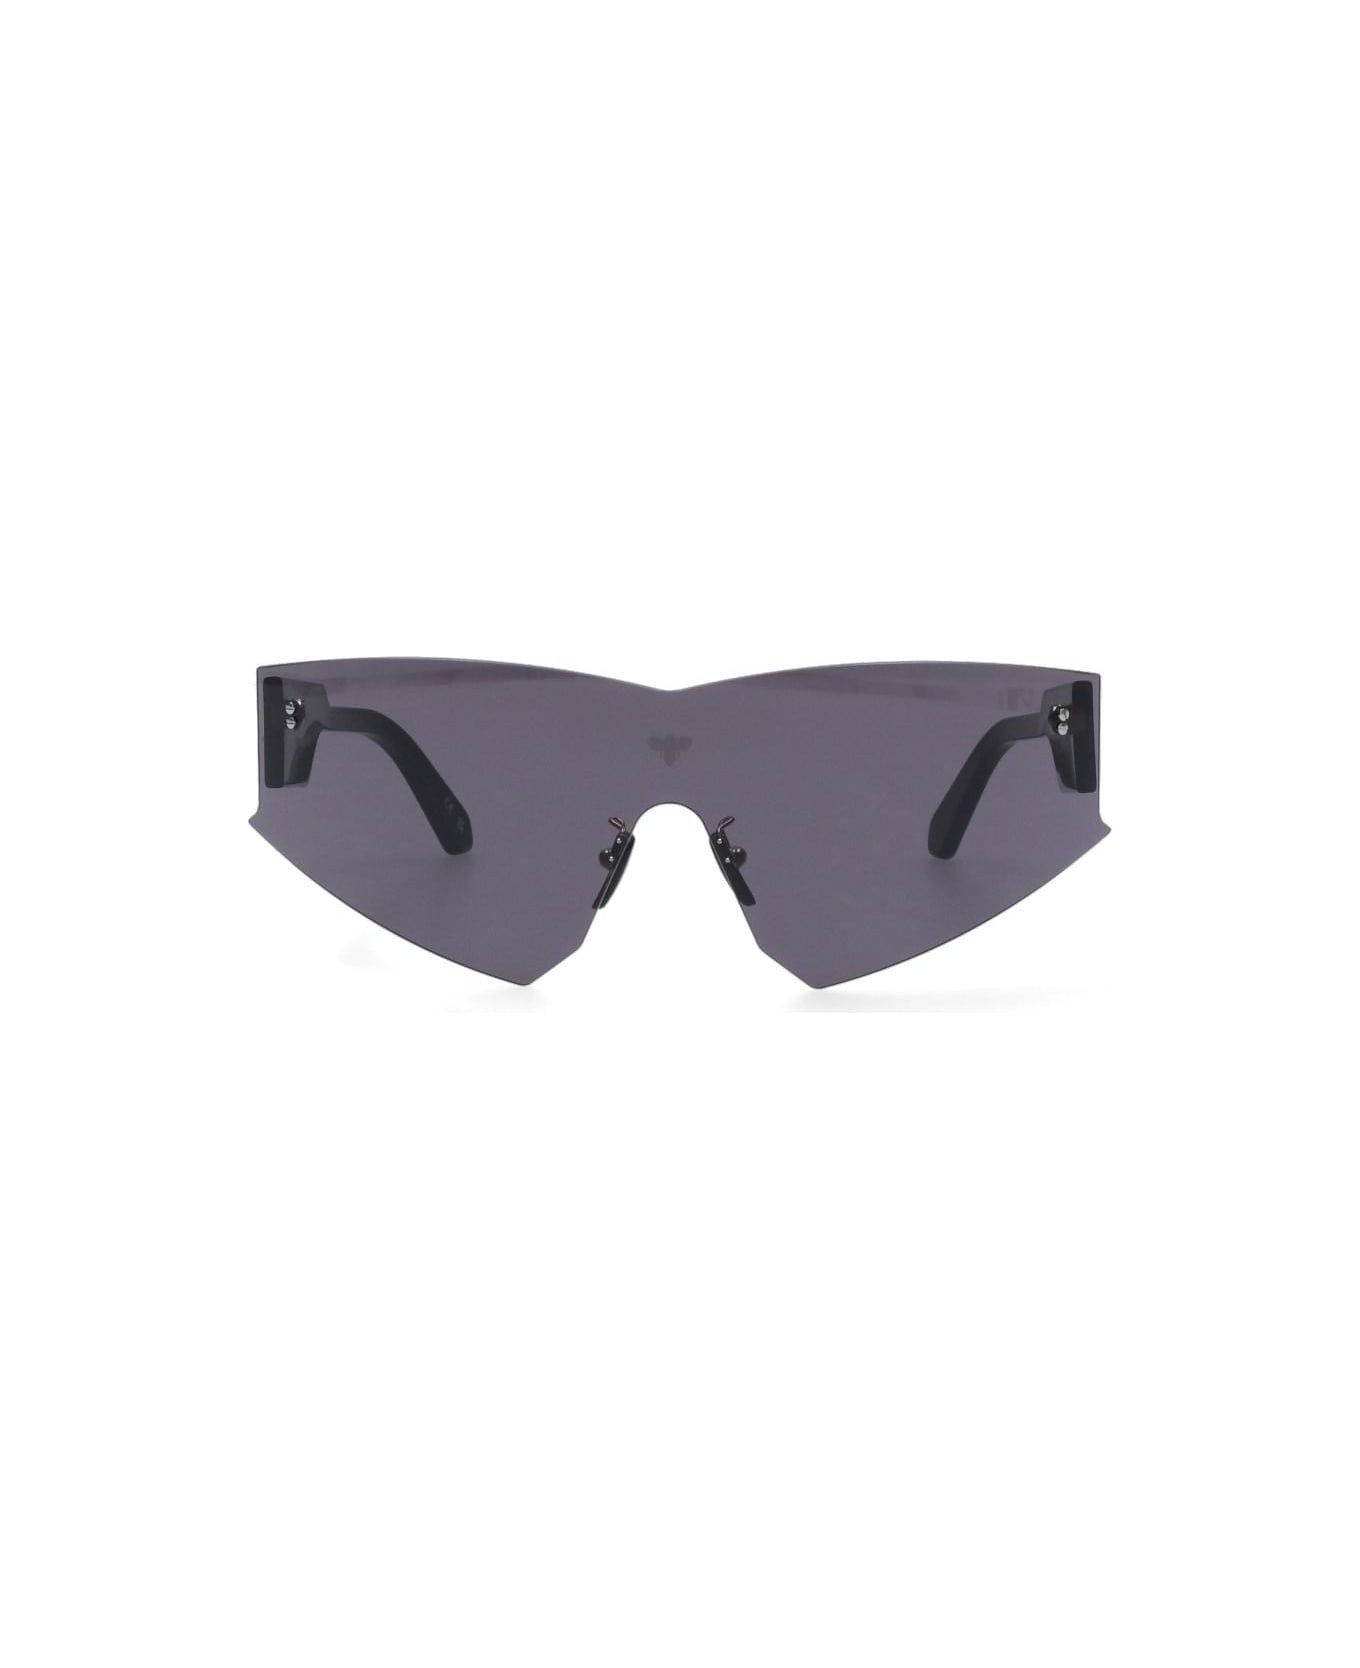 Face.hide 'vertigo' Sunglasses - Grigio